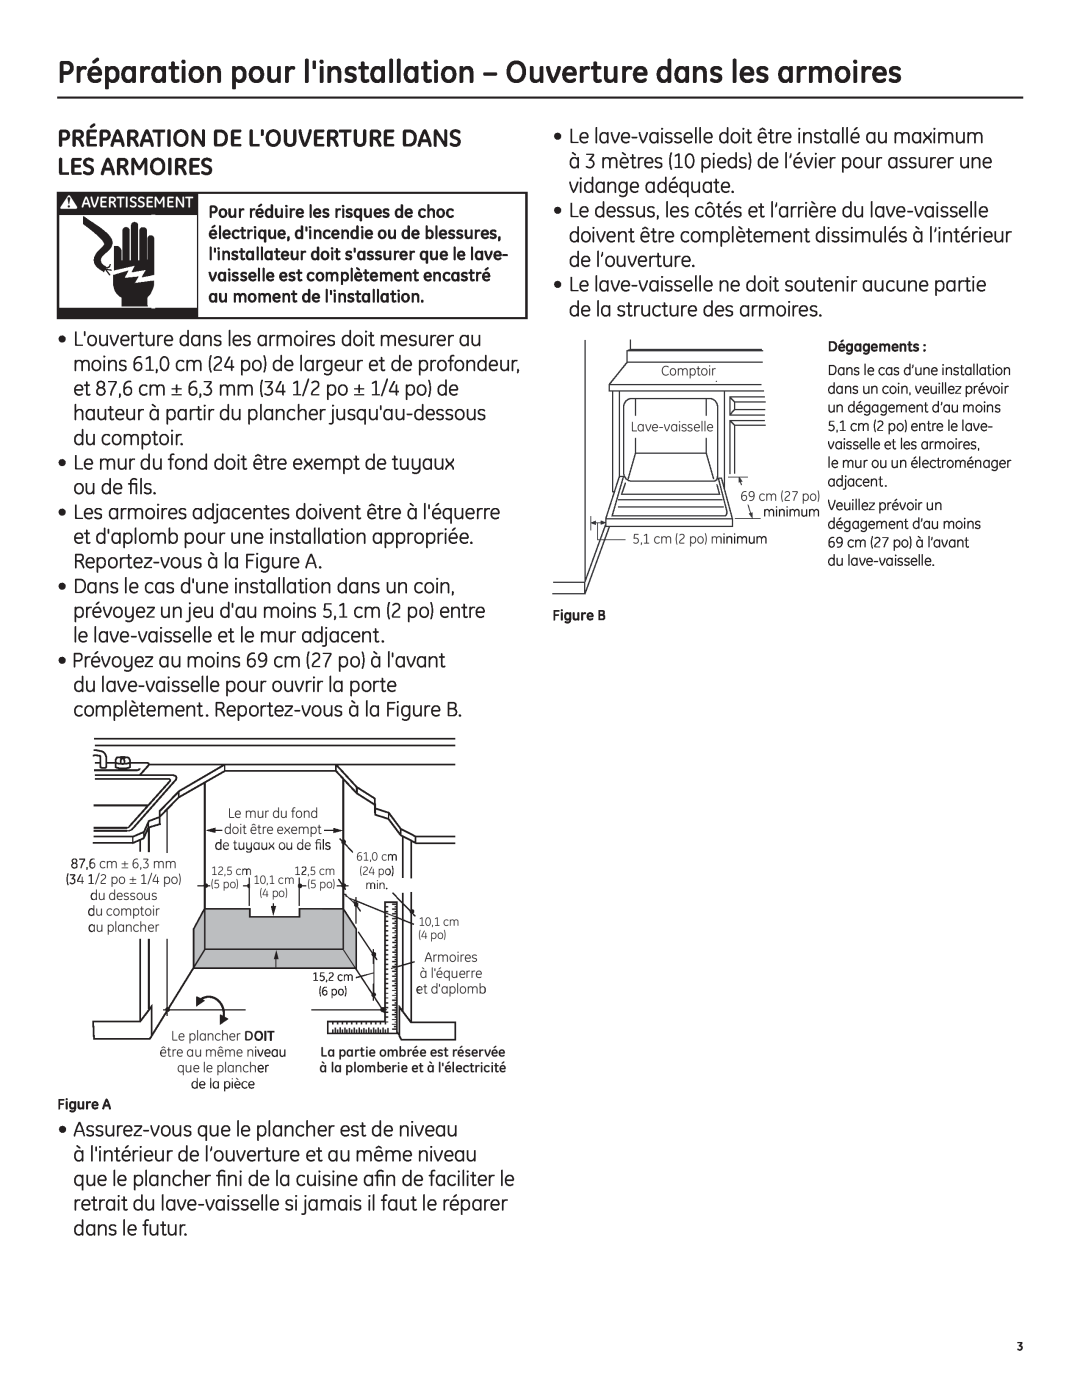 GE 206C1559P195 installation instructions Préparation De Louverture Dans Les Armoires 